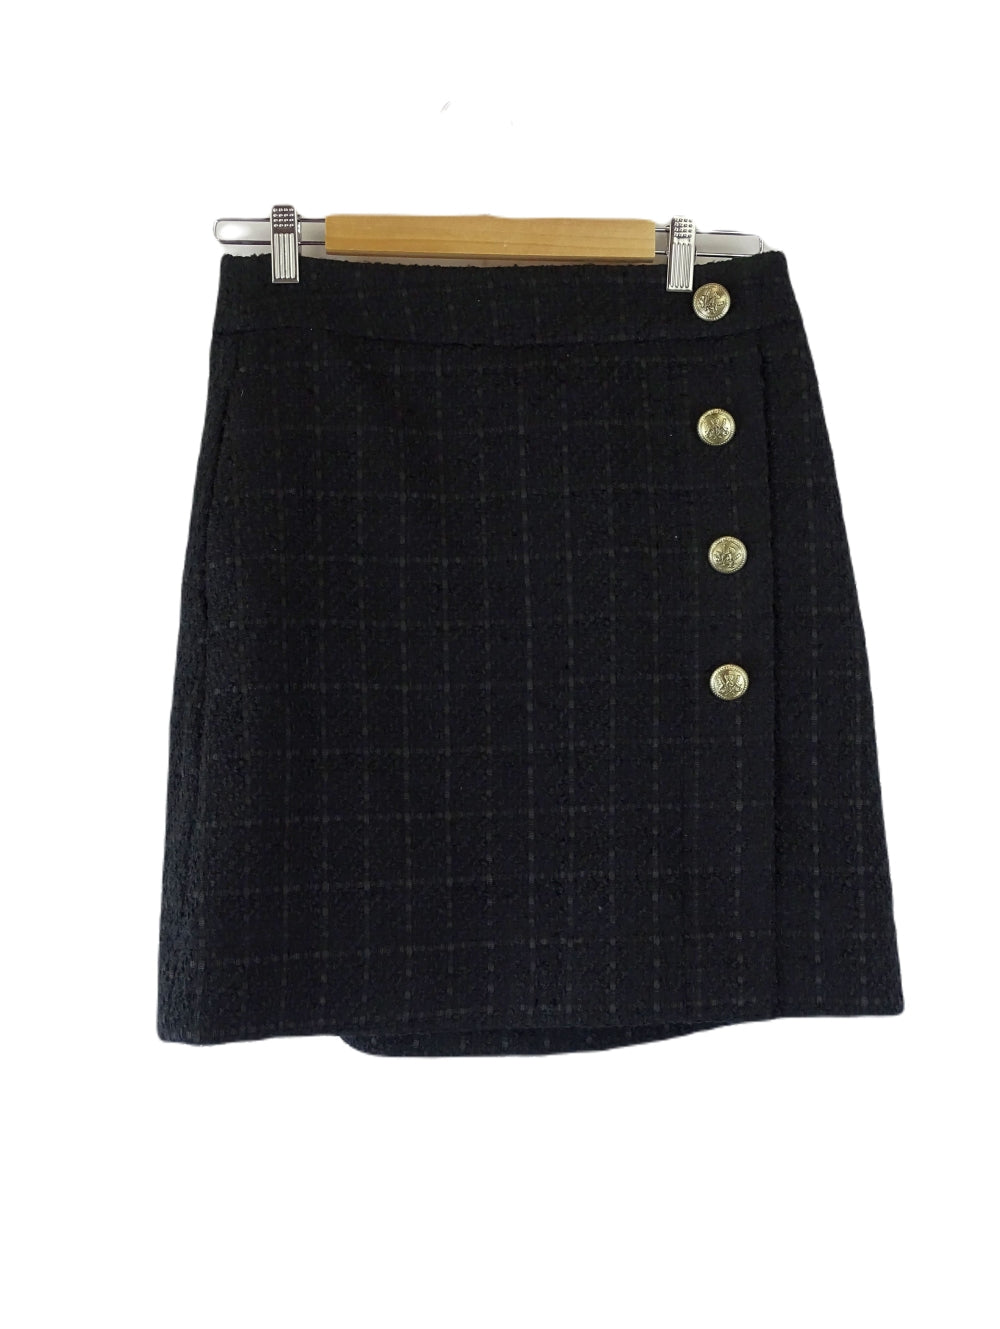 Portmans Black Woven Skirt 10